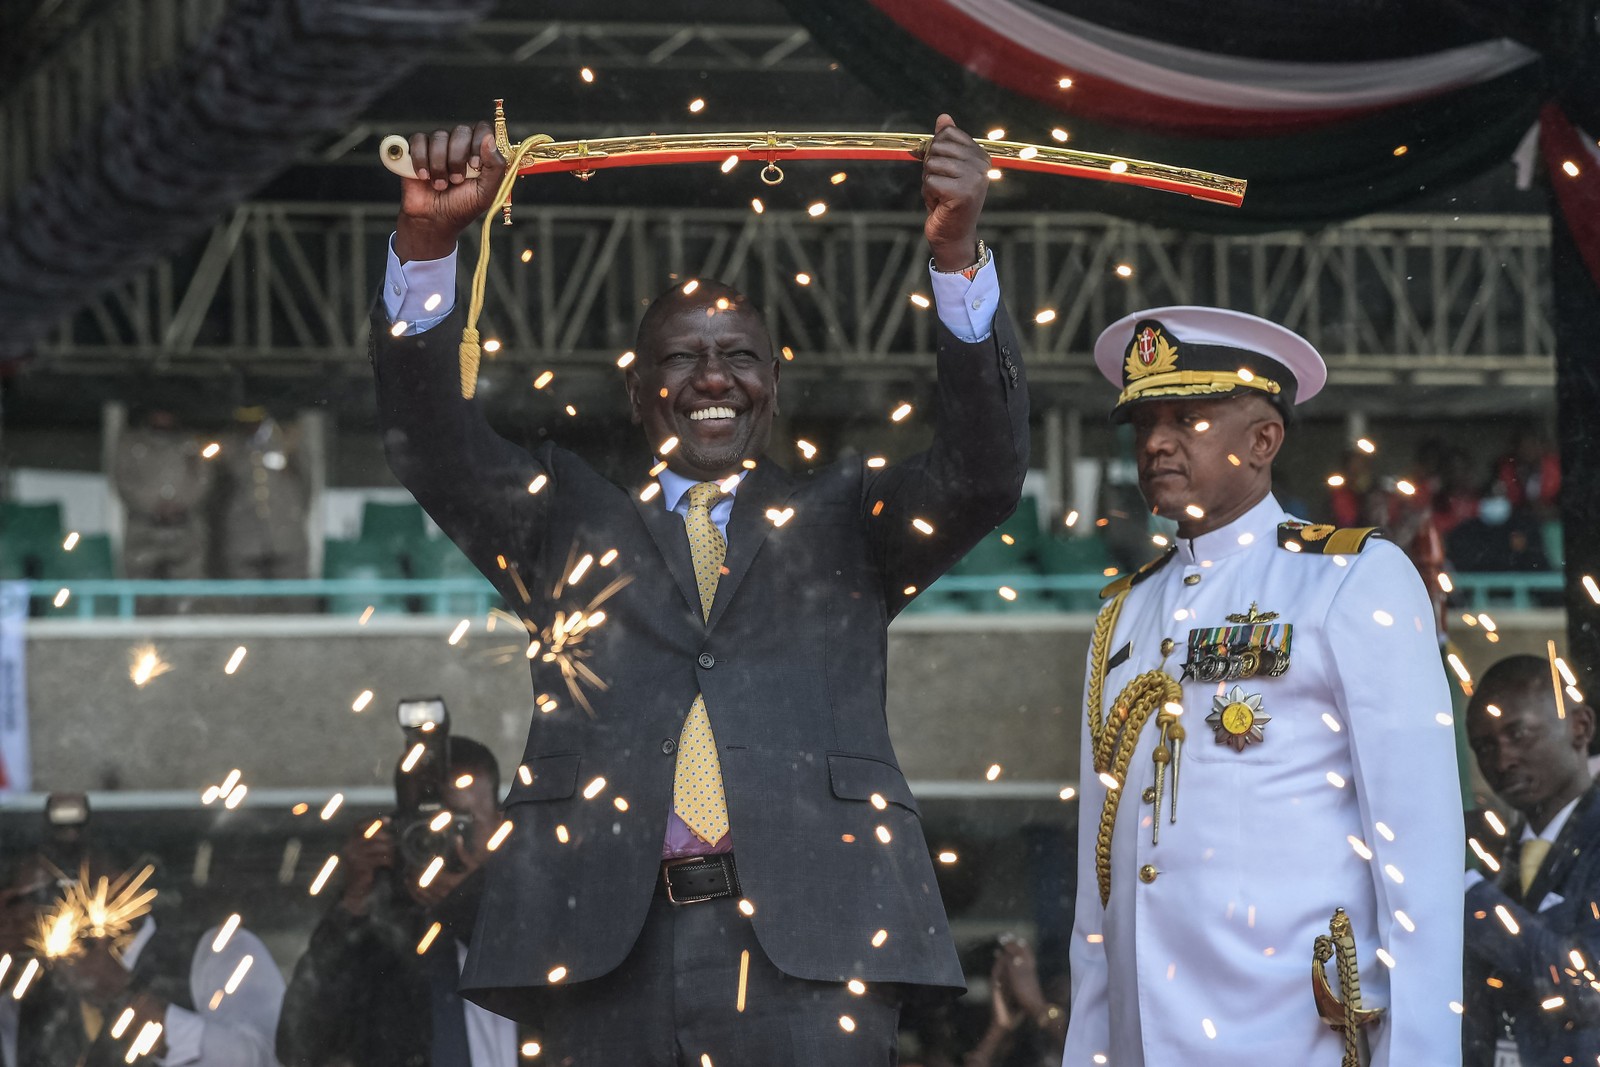 Dezenas de milhares de pessoas juntaram-se a chefes de estado regionais em um estádio lotado em Nairóbi para William Ruto, novo presidente,fazer o juramento de posse, depois de eleições acirradas no Quênia  — Foto: SIMON MAINA/AFP